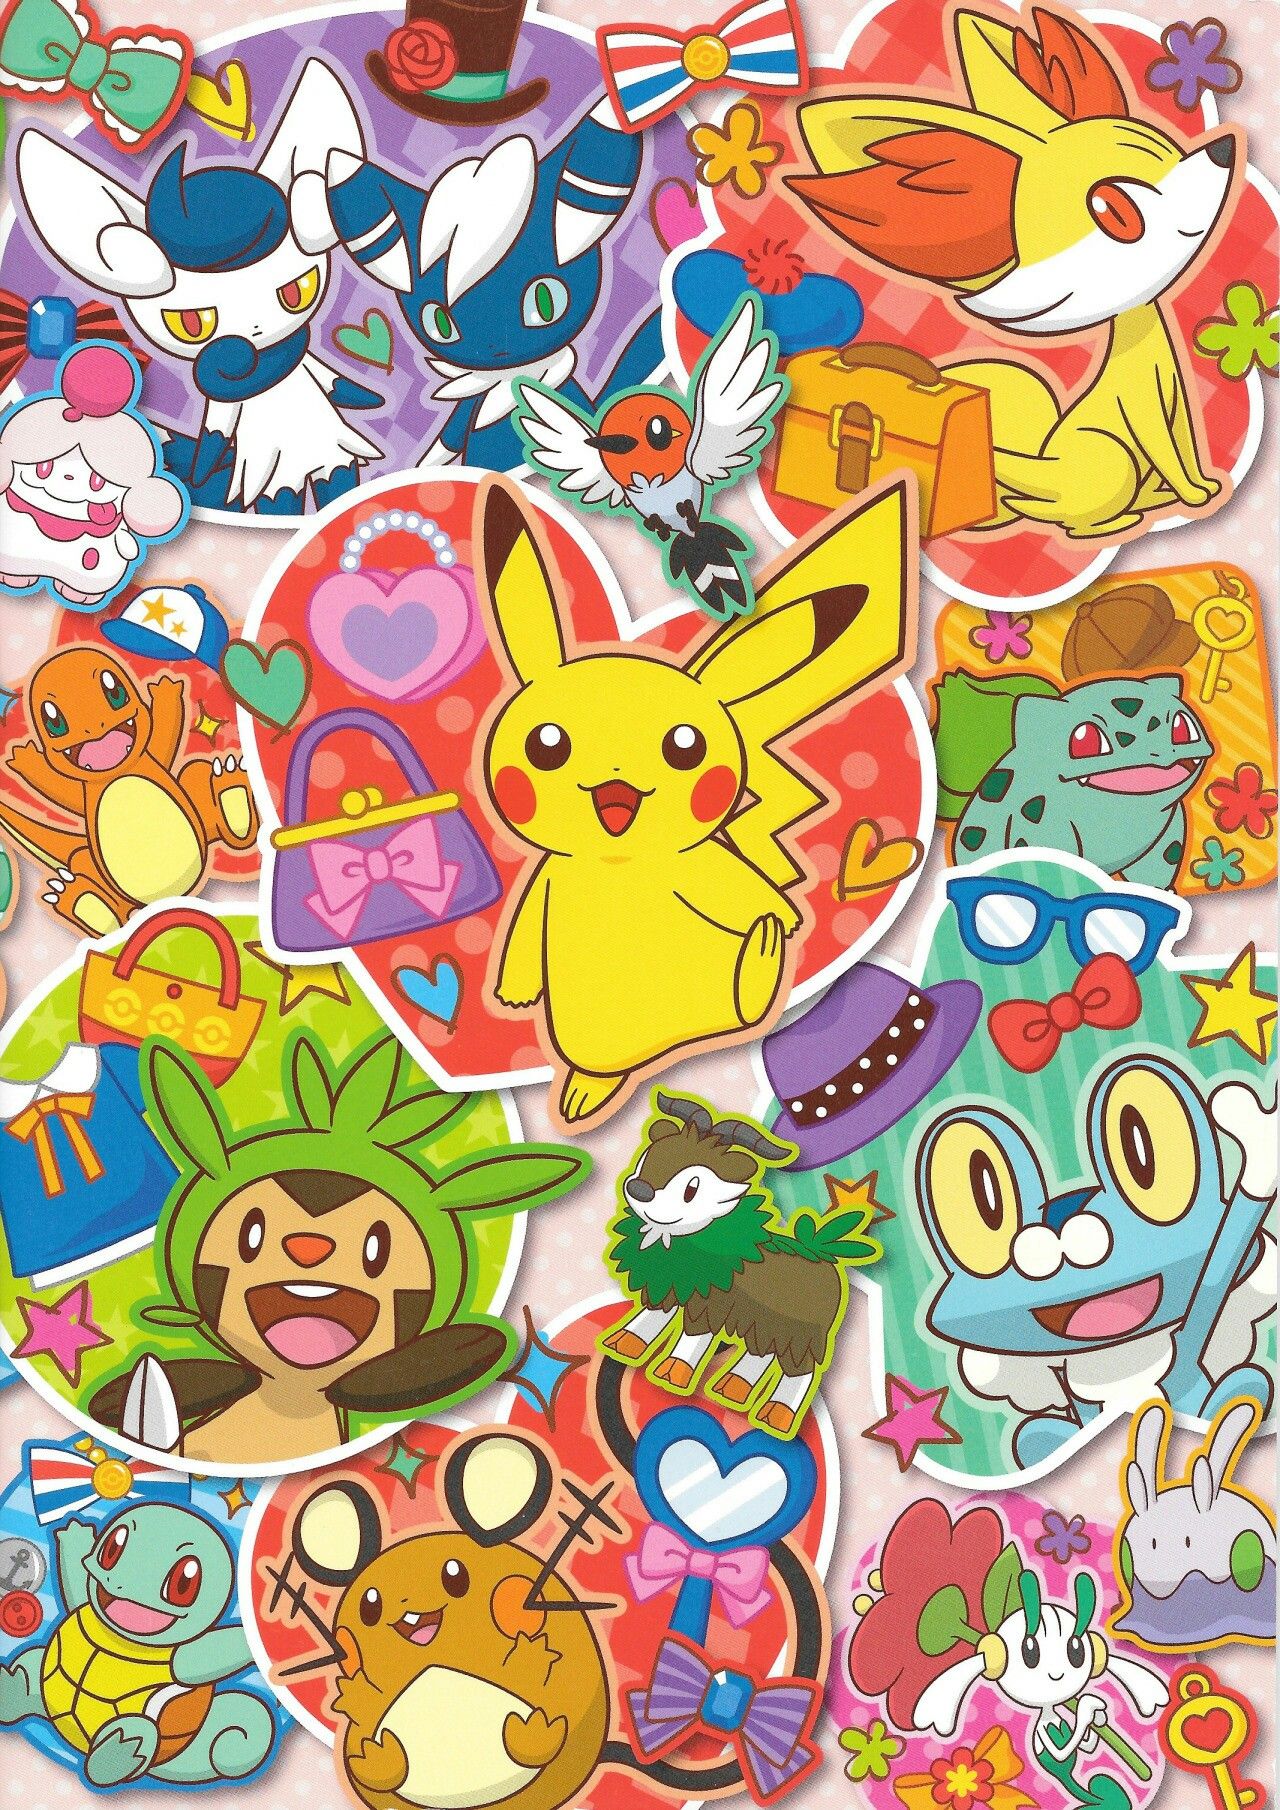 Pokémon. Cute pokemon wallpaper, Pokemon poster, Pokemon cover